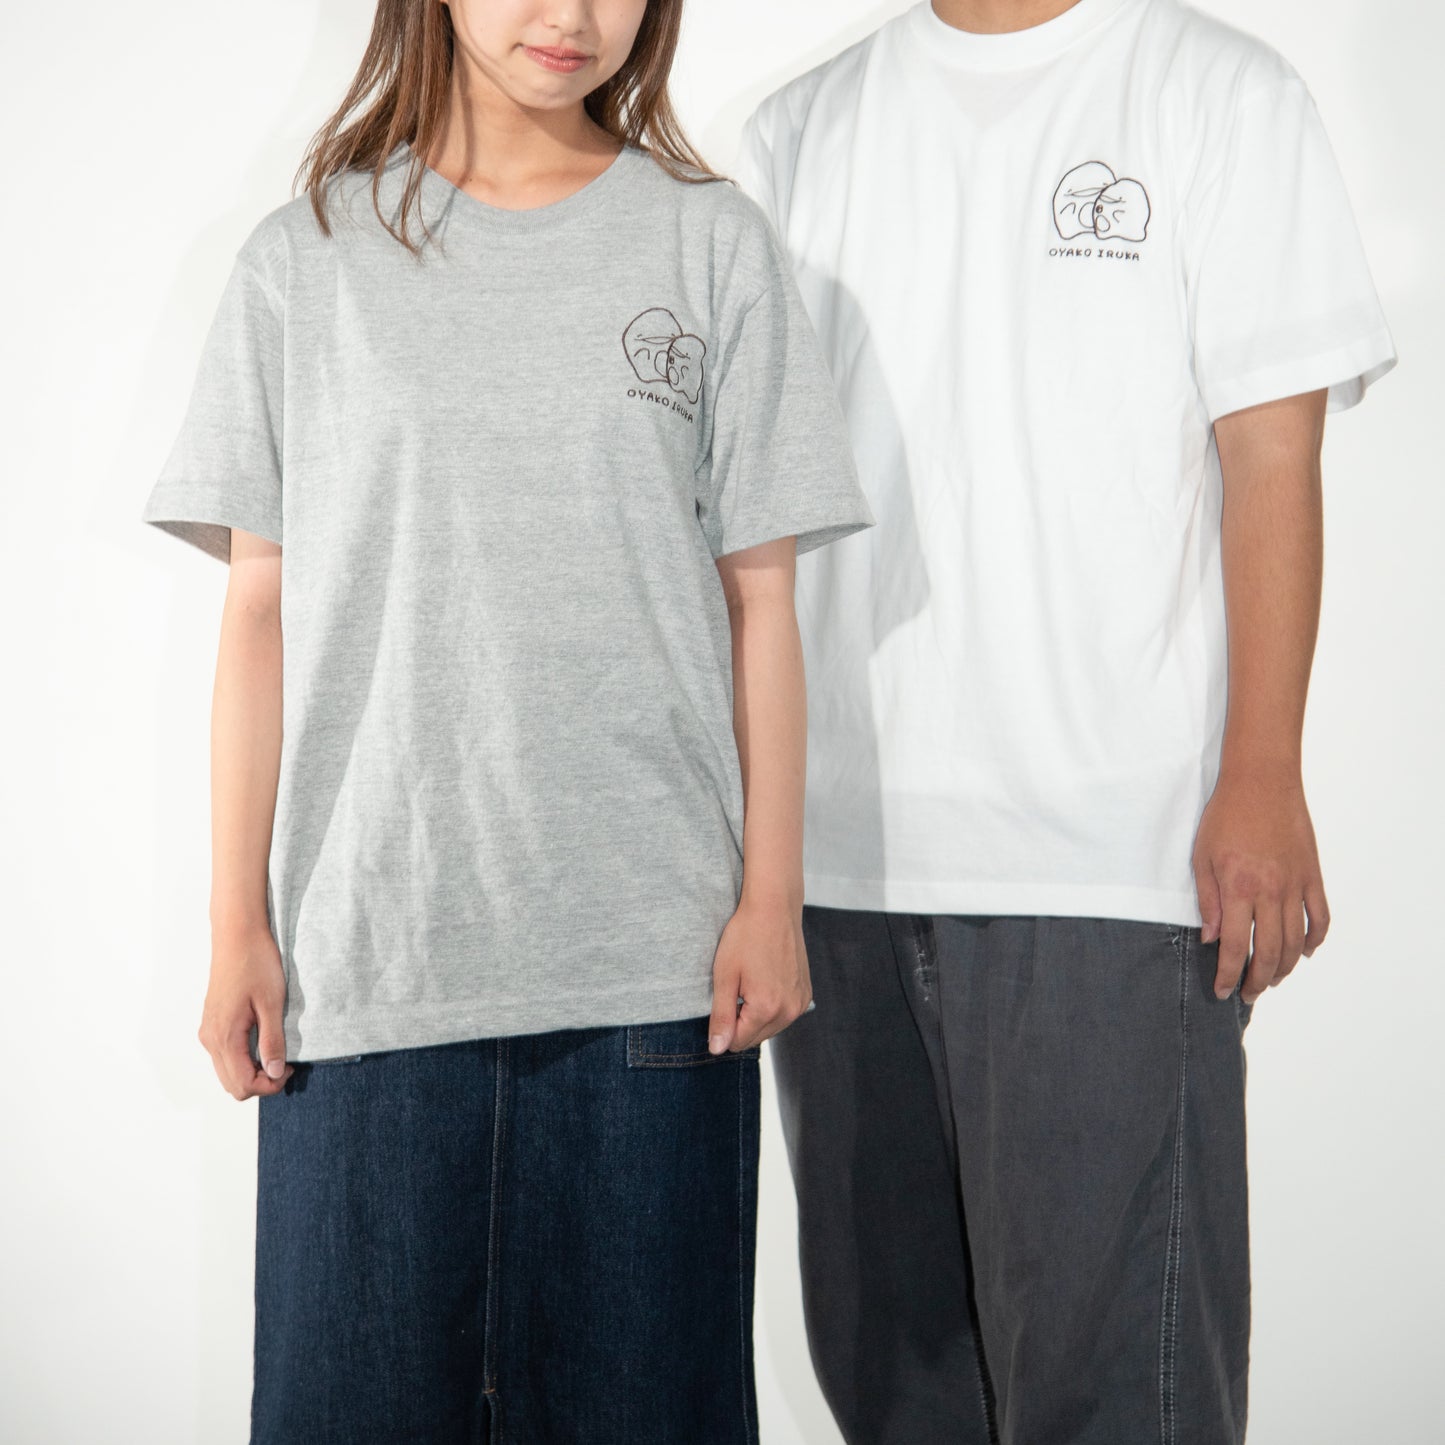 [Delfino genitore e figlio] T-shirt ricamata a manica corta